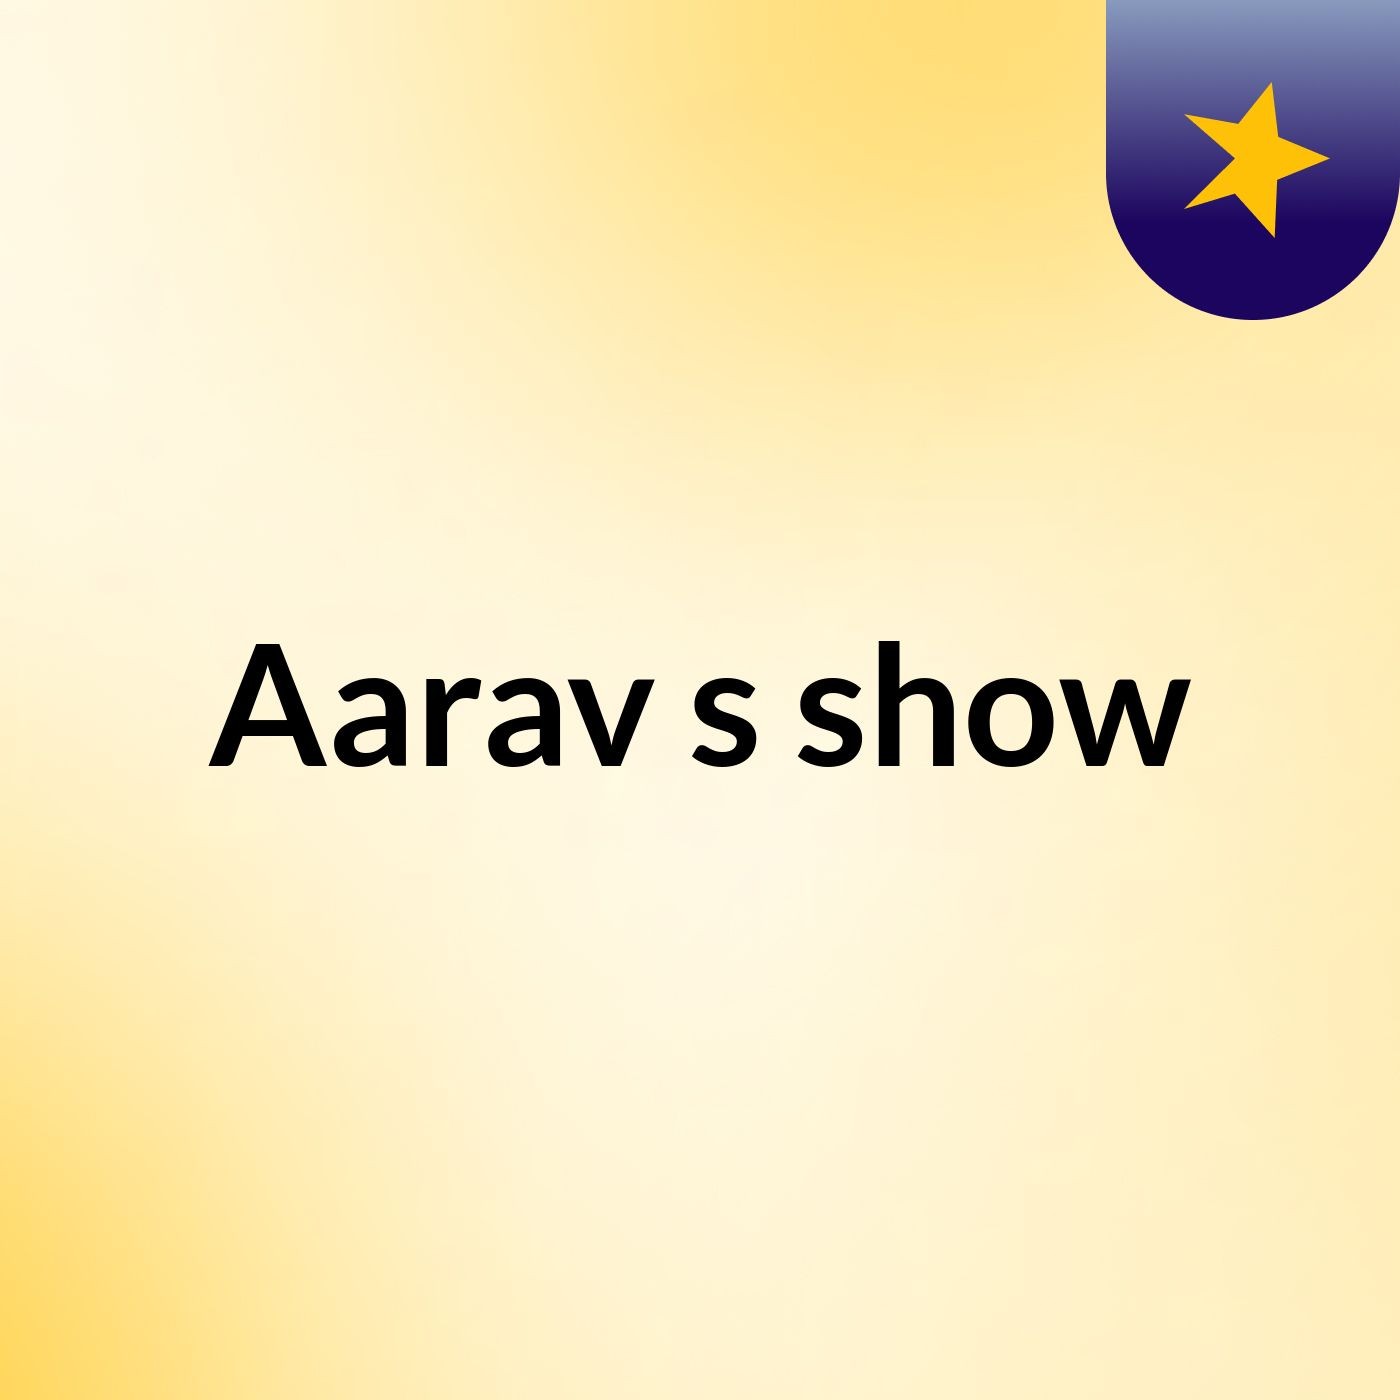 Aarav's show